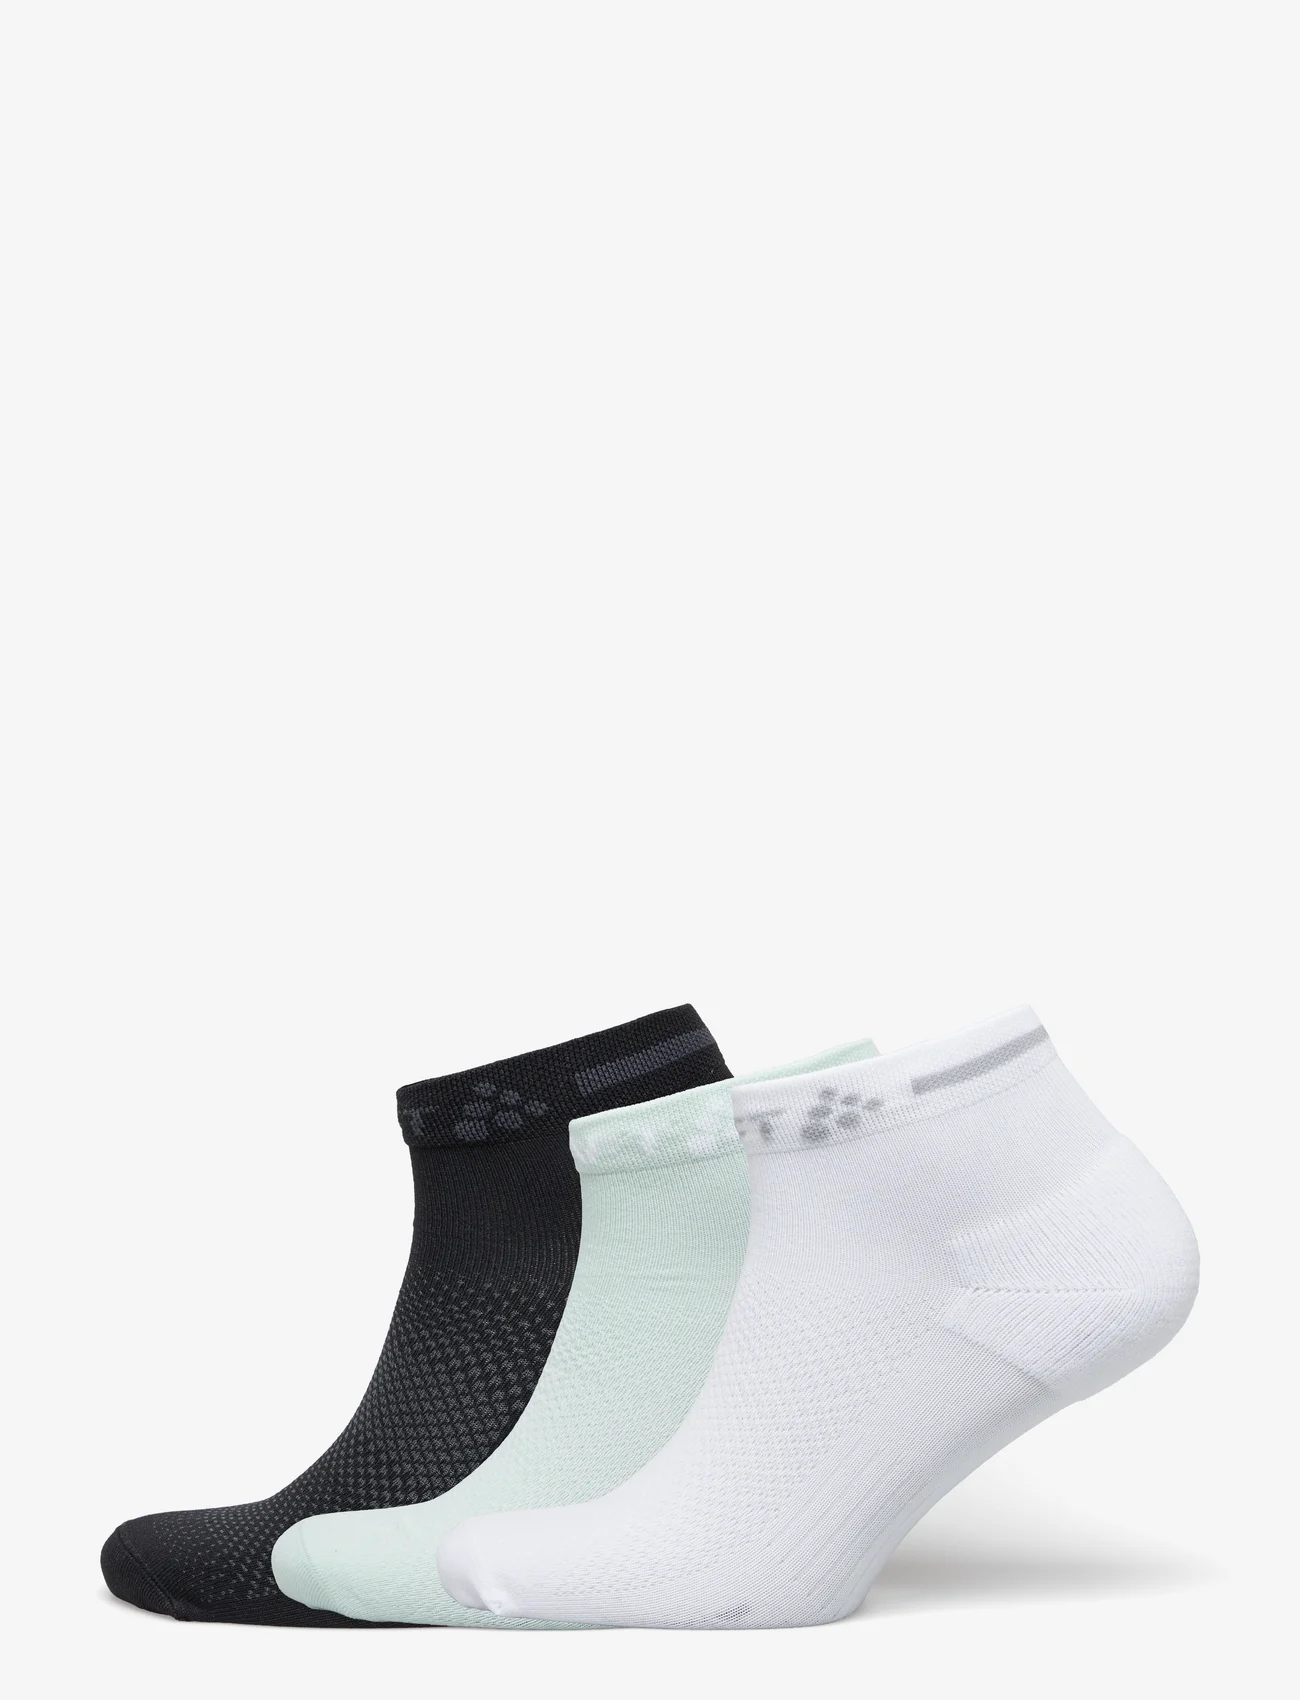 Craft - Core Dry Mid Sock 3-Pack - mažiausios kainos - plexi/black - 0